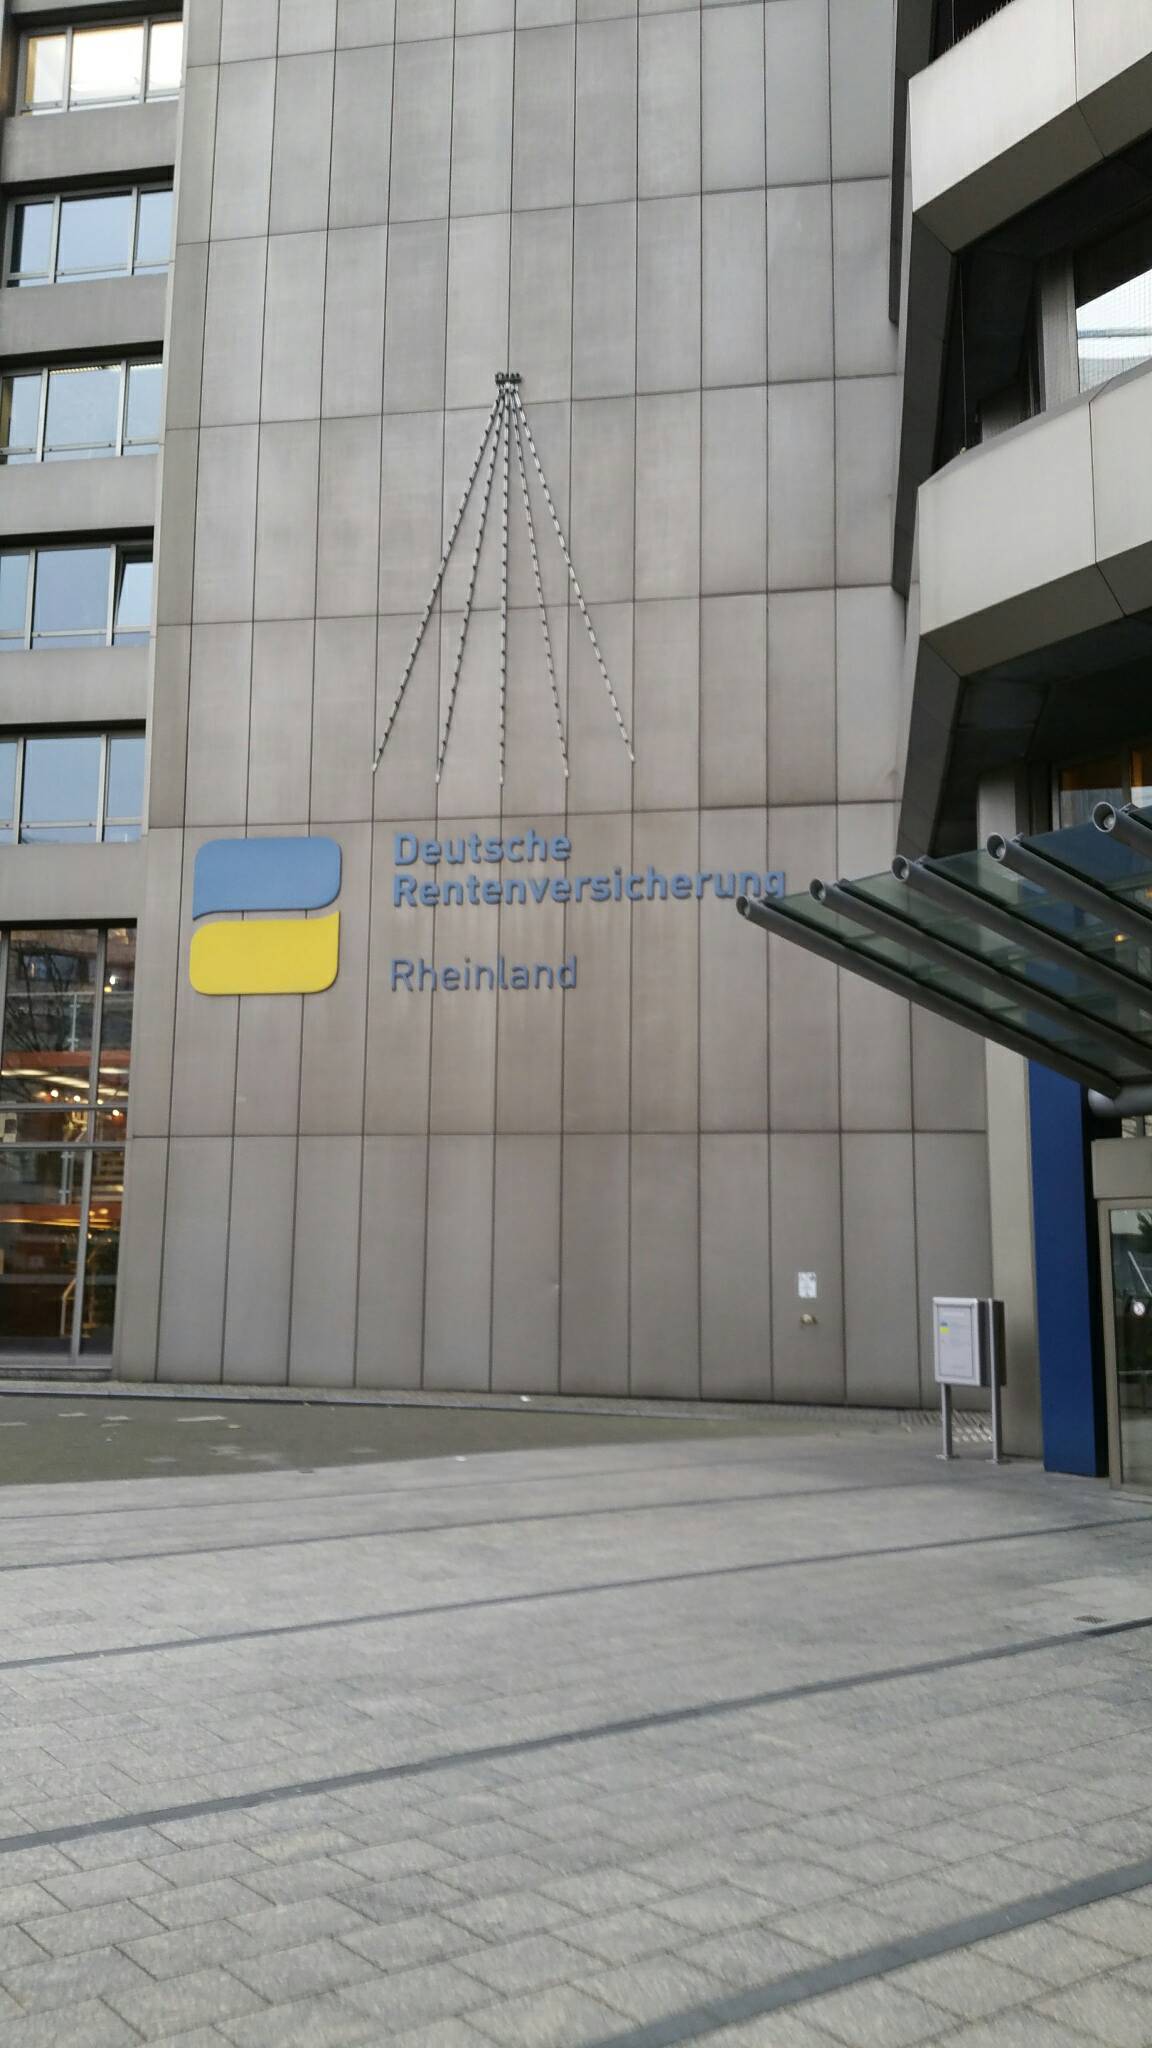 Bild 4 Deutsche Rentenversicherung Rheinland LVA Rheinprovinz in Düsseldorf